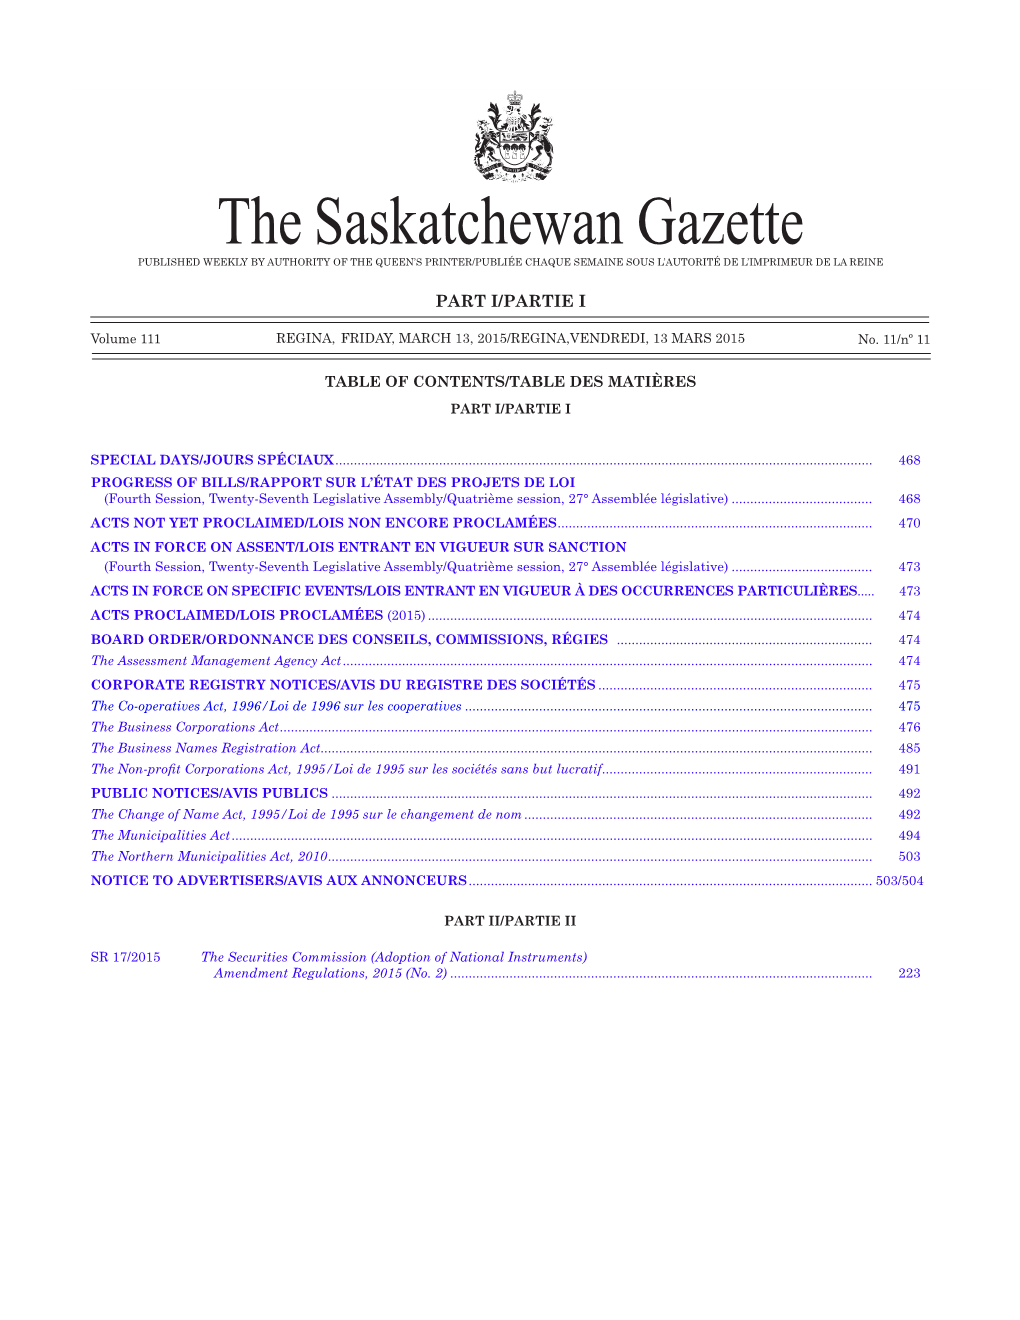 THE SASKATCHEWAN GAZETTE, March 13, 2015 467